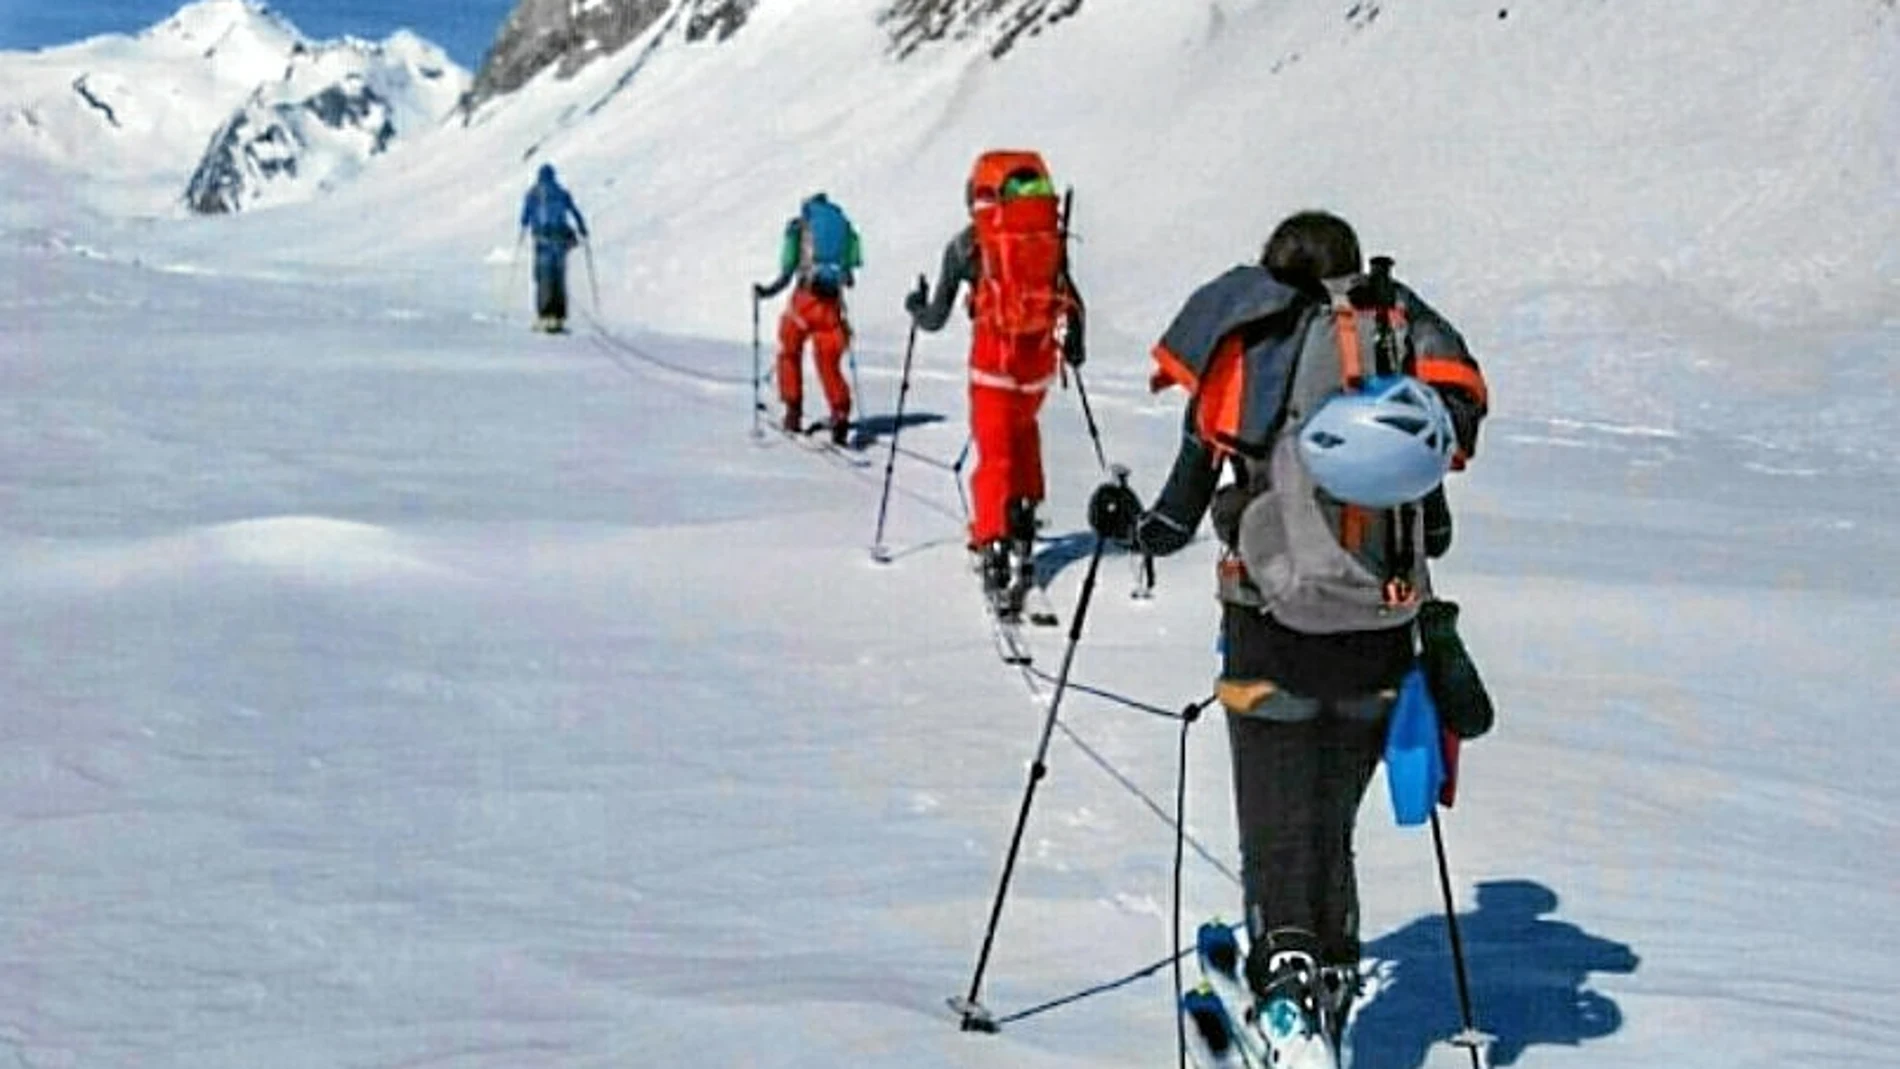 Parte del equipo de esquiadores de fondo que fallecieron el pasado sábado en Suiza.